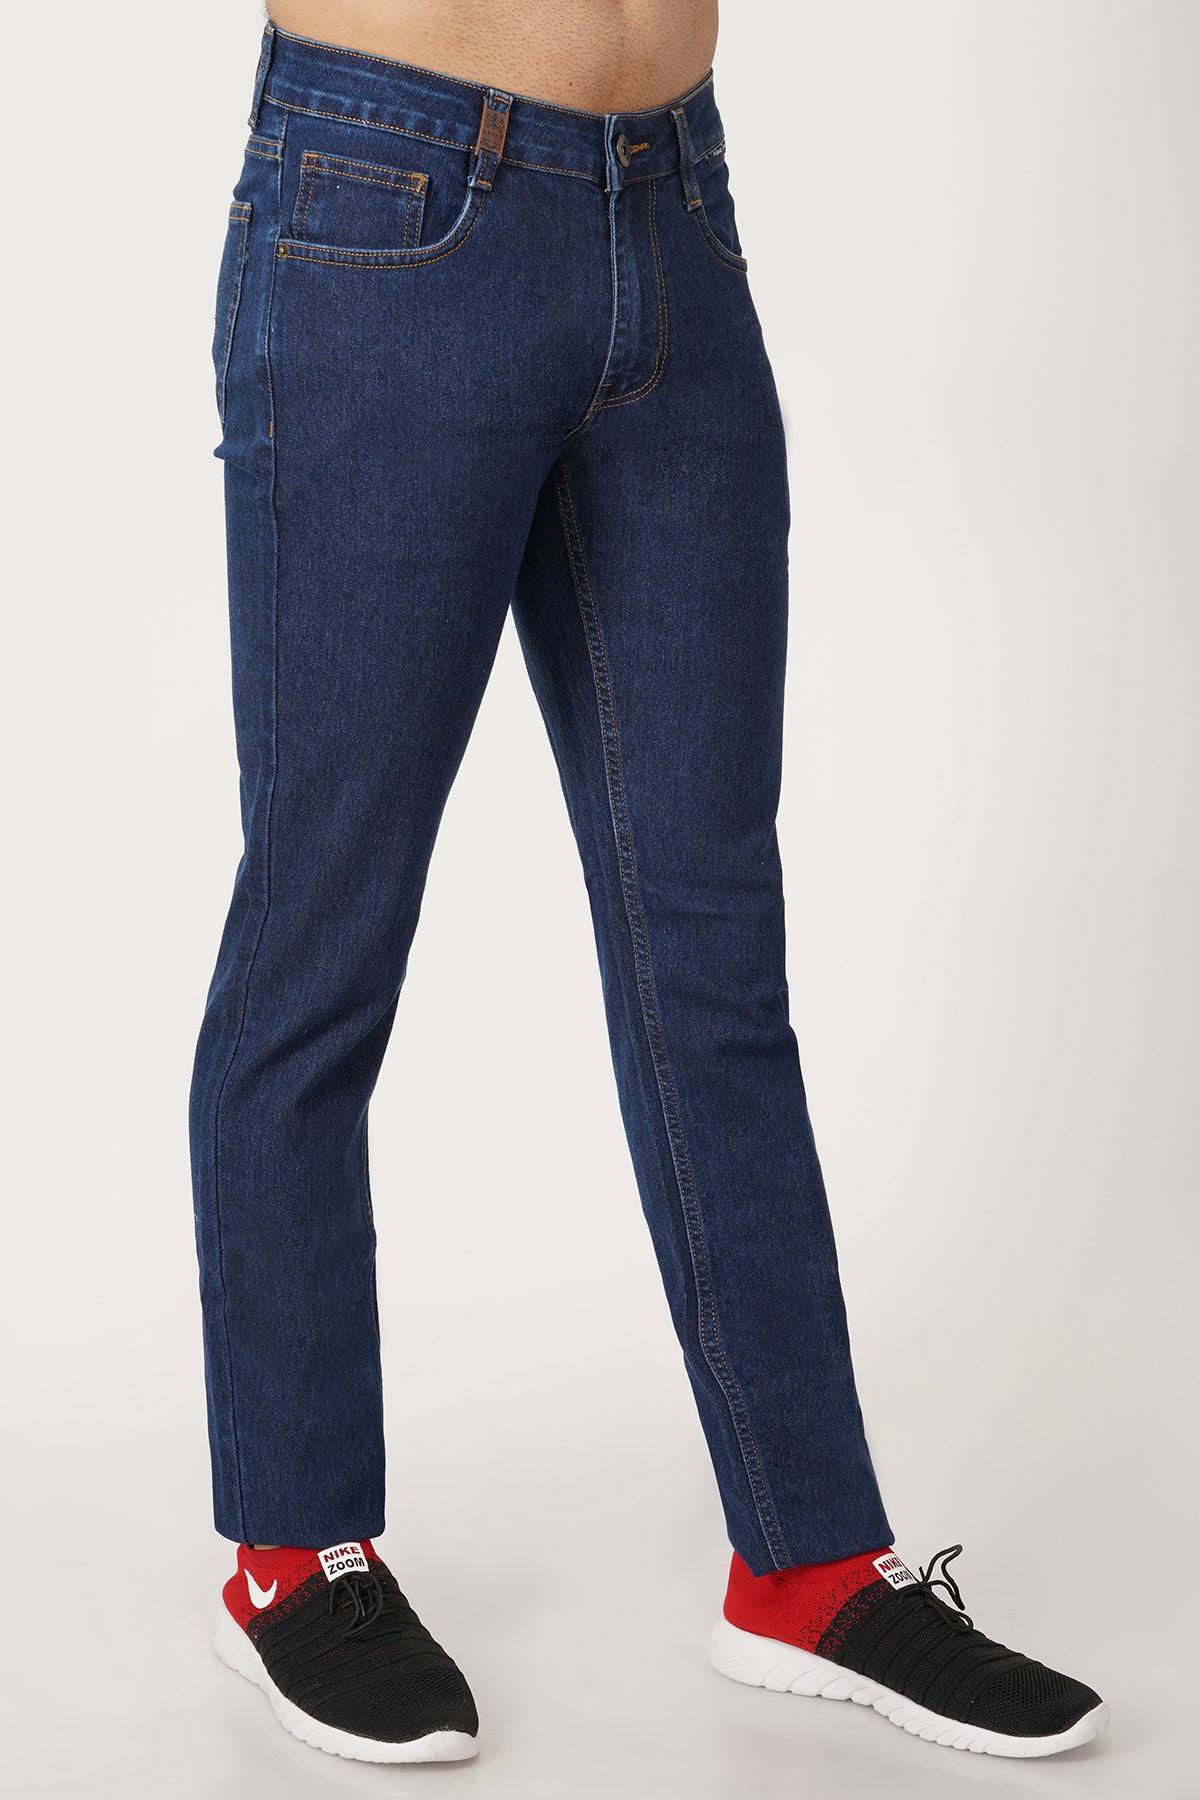 Men's Dark Blue Slim Fit Jeans